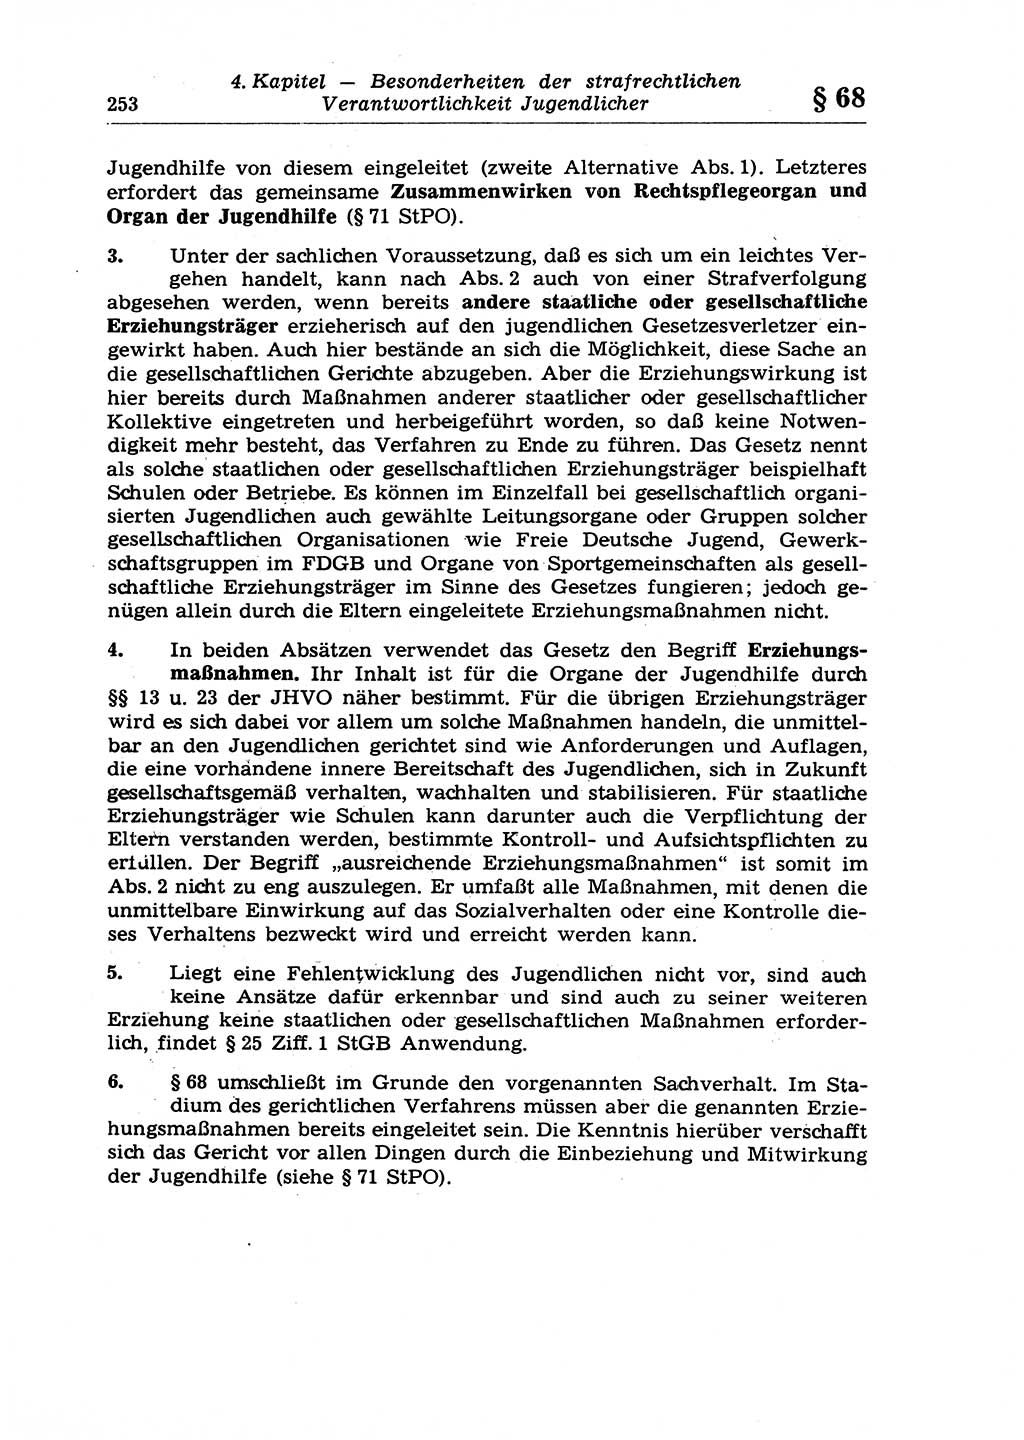 Strafrecht der Deutschen Demokratischen Republik (DDR), Lehrkommentar zum Strafgesetzbuch (StGB), Allgemeiner Teil 1970, Seite 253 (Strafr. DDR Lehrkomm. StGB AT 1970, S. 253)